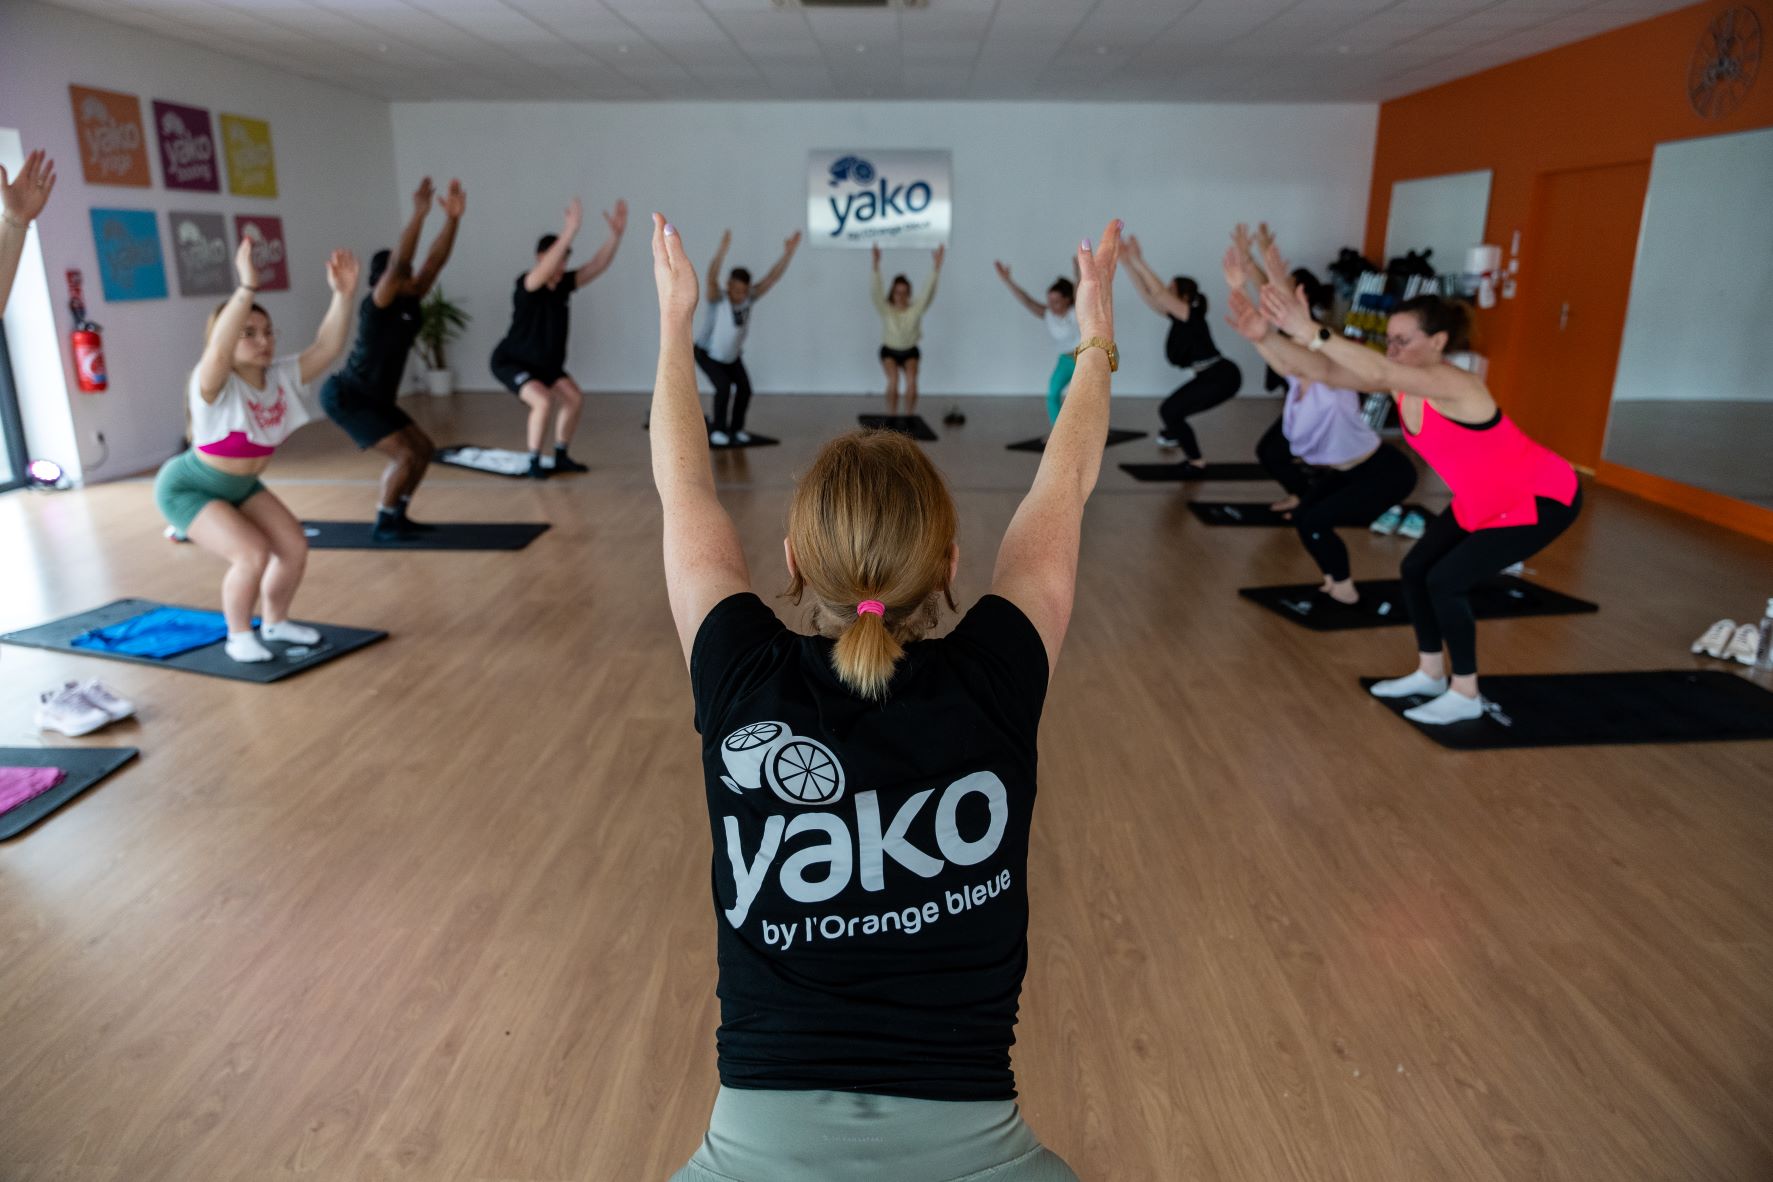 Yako Yoga